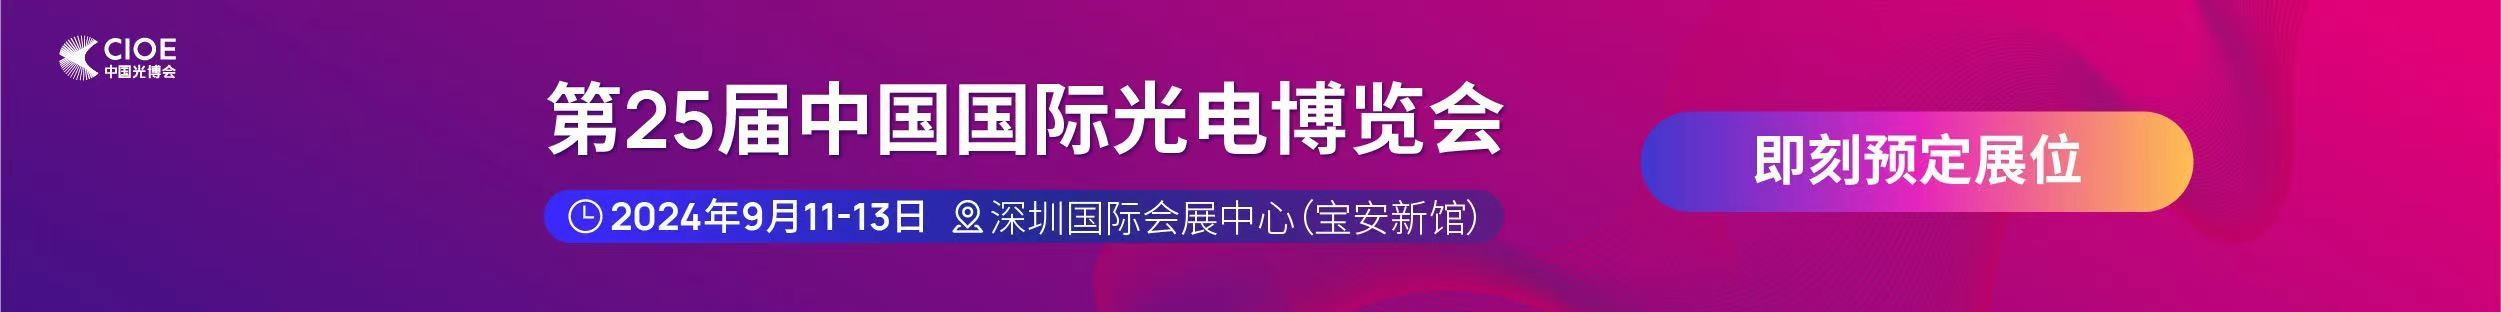 44118太阳诚公司受邀参展第25届中国国际光电博览会